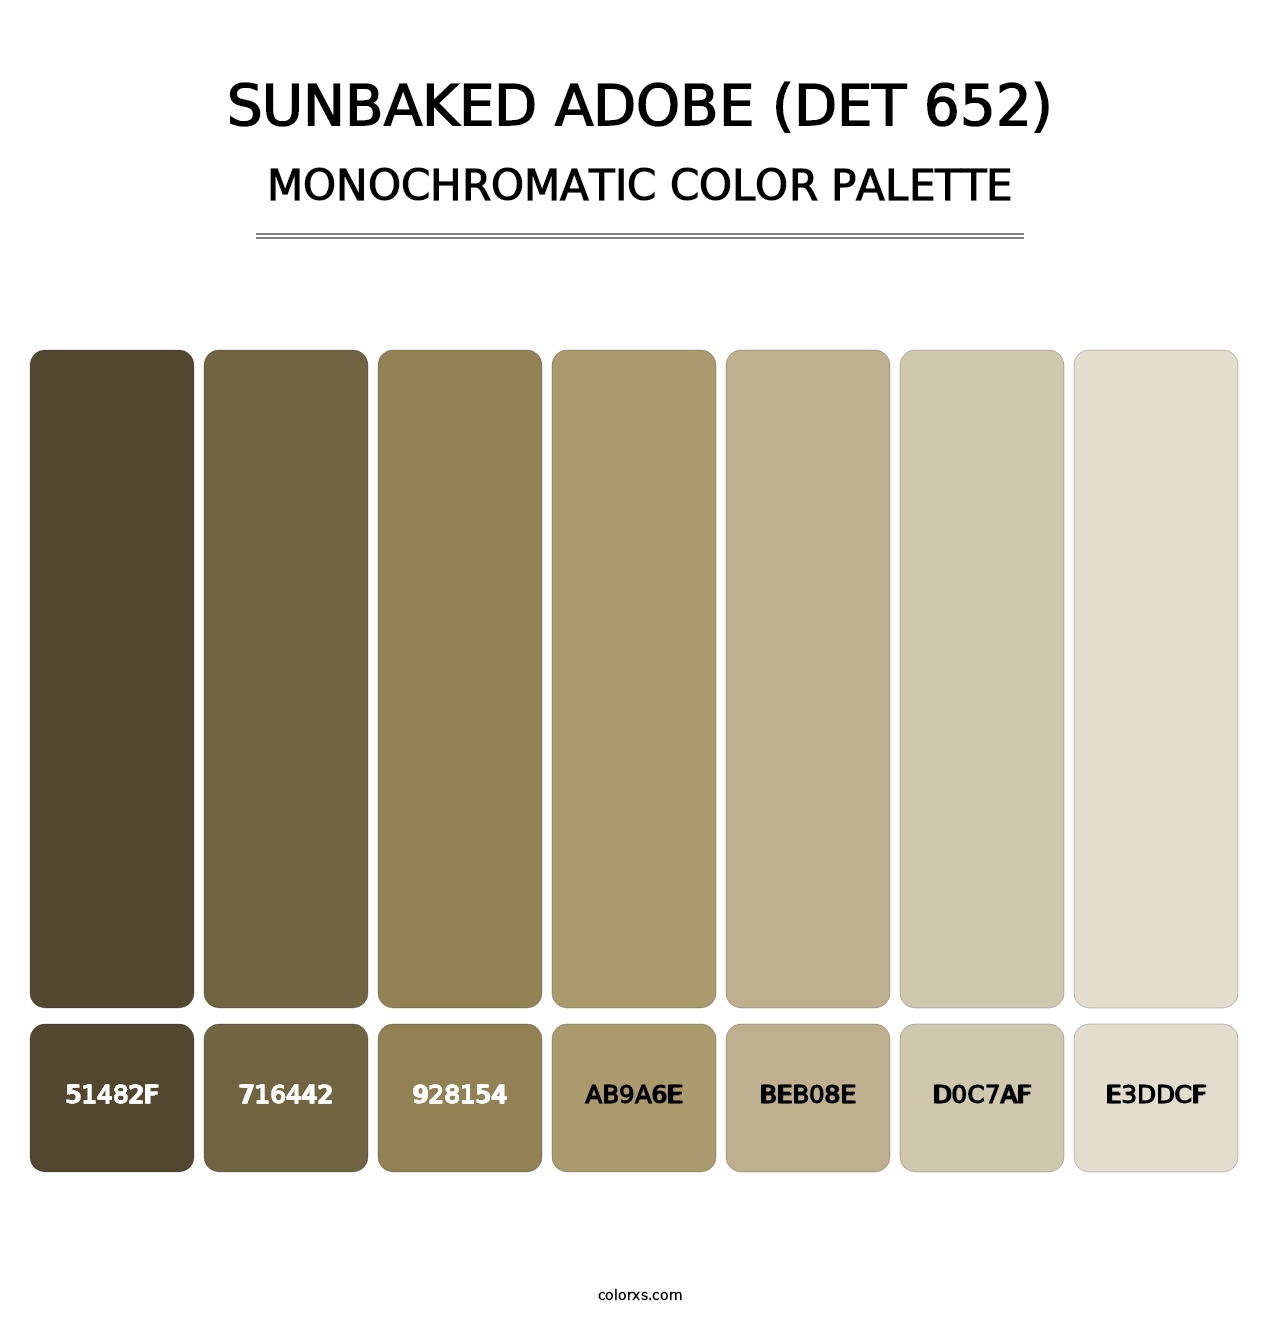 Sunbaked Adobe (DET 652) - Monochromatic Color Palette